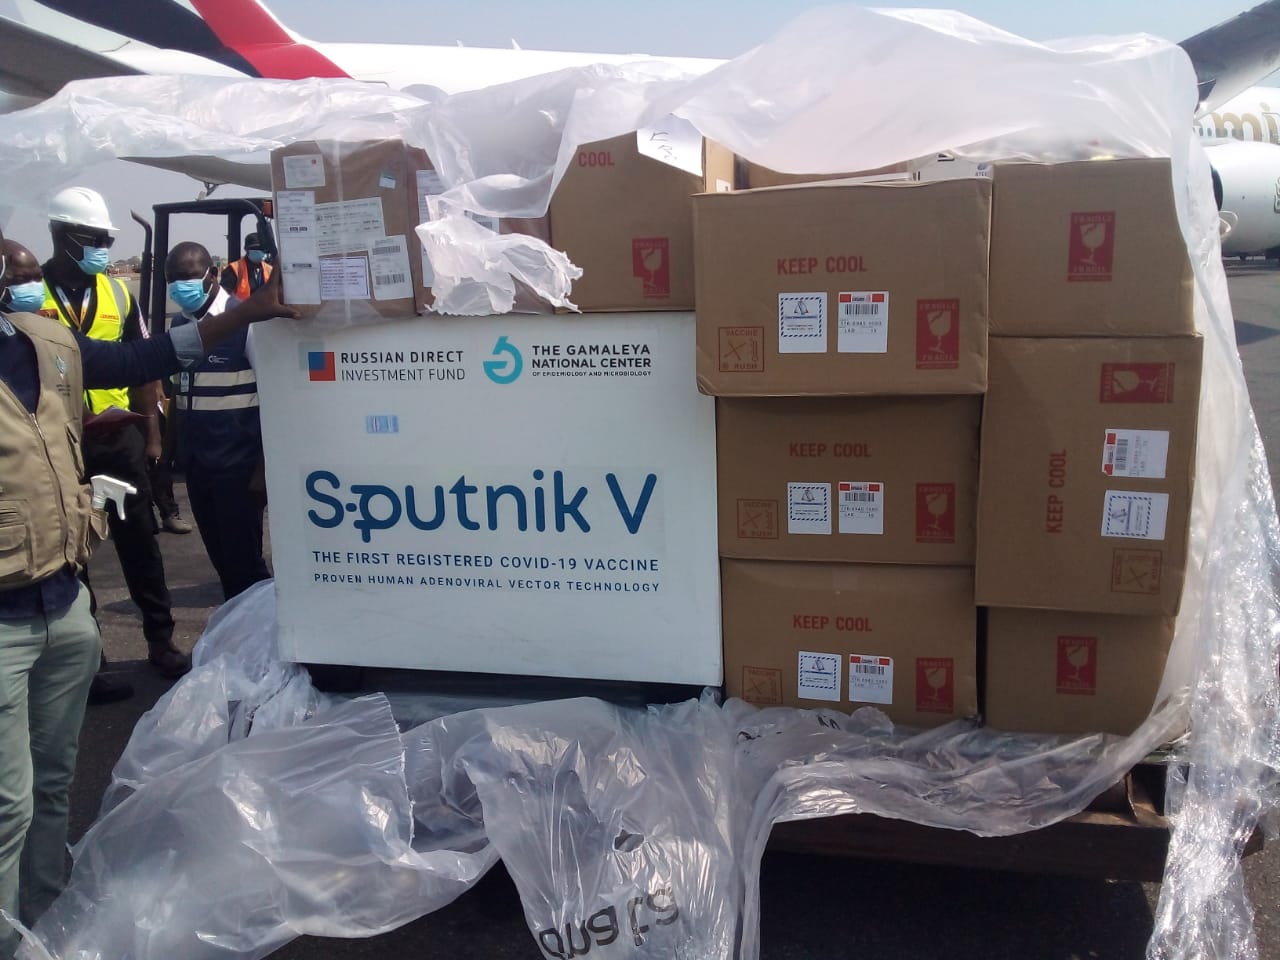 Angola recebeu hoje mais doses da Vacina Sputnik V